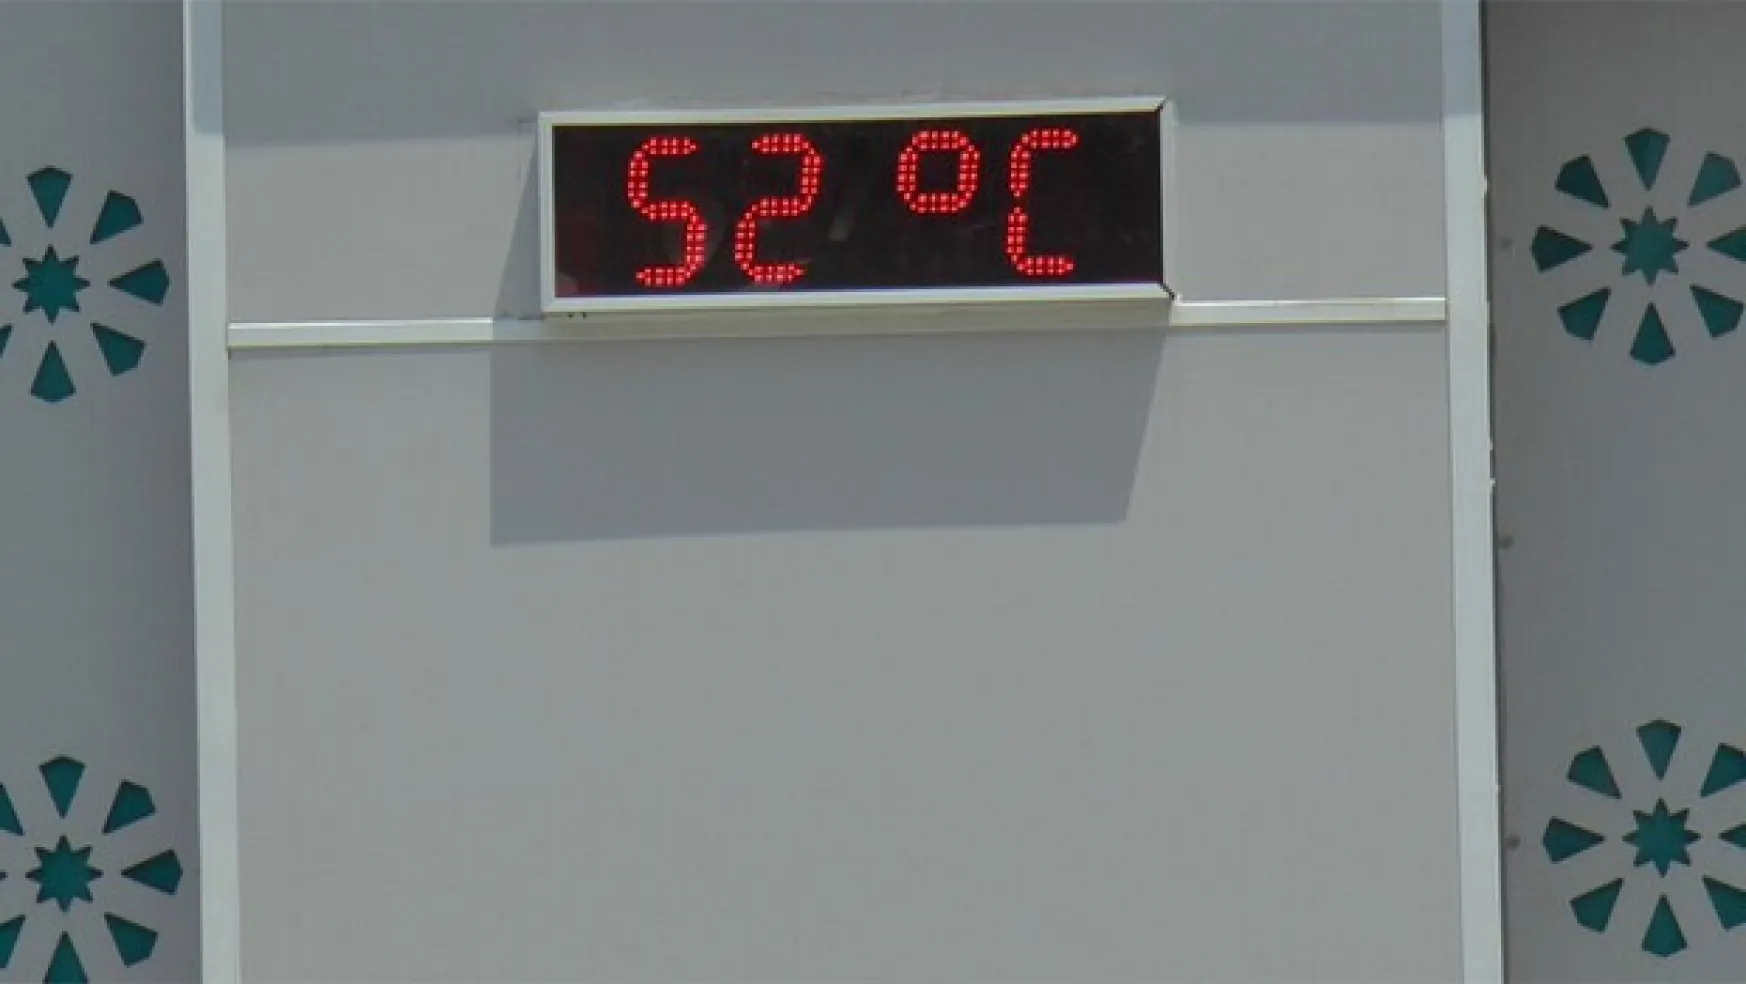 Termometre 52 dereceyi gösterdi...